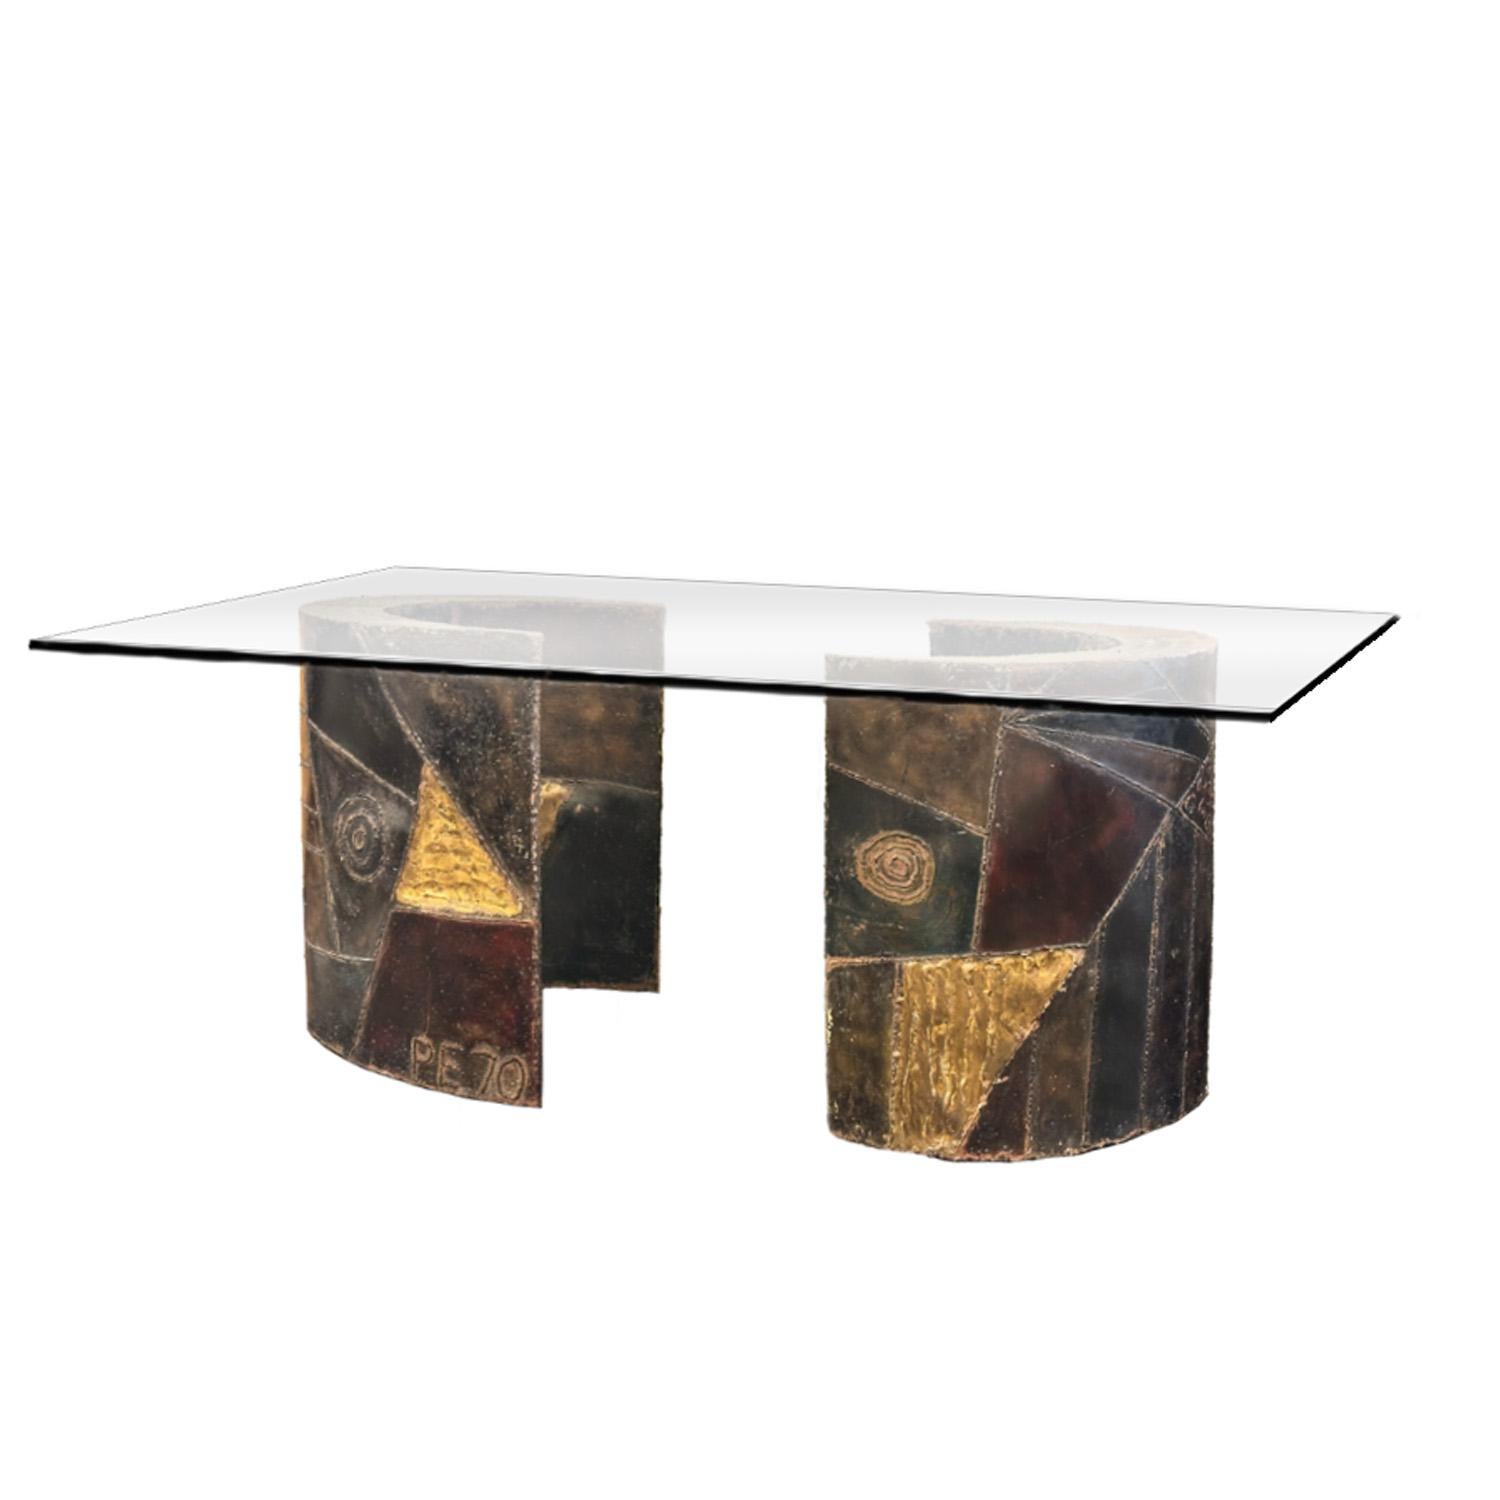 Paire de bases de table brutalistes en acier soudé en forme de croissant, décorées avec de la peinture émaillée colorée et des accents dorés par Paul Evans pour Directional Furniture. Les bases supportent un plateau de table en verre épais et l'une